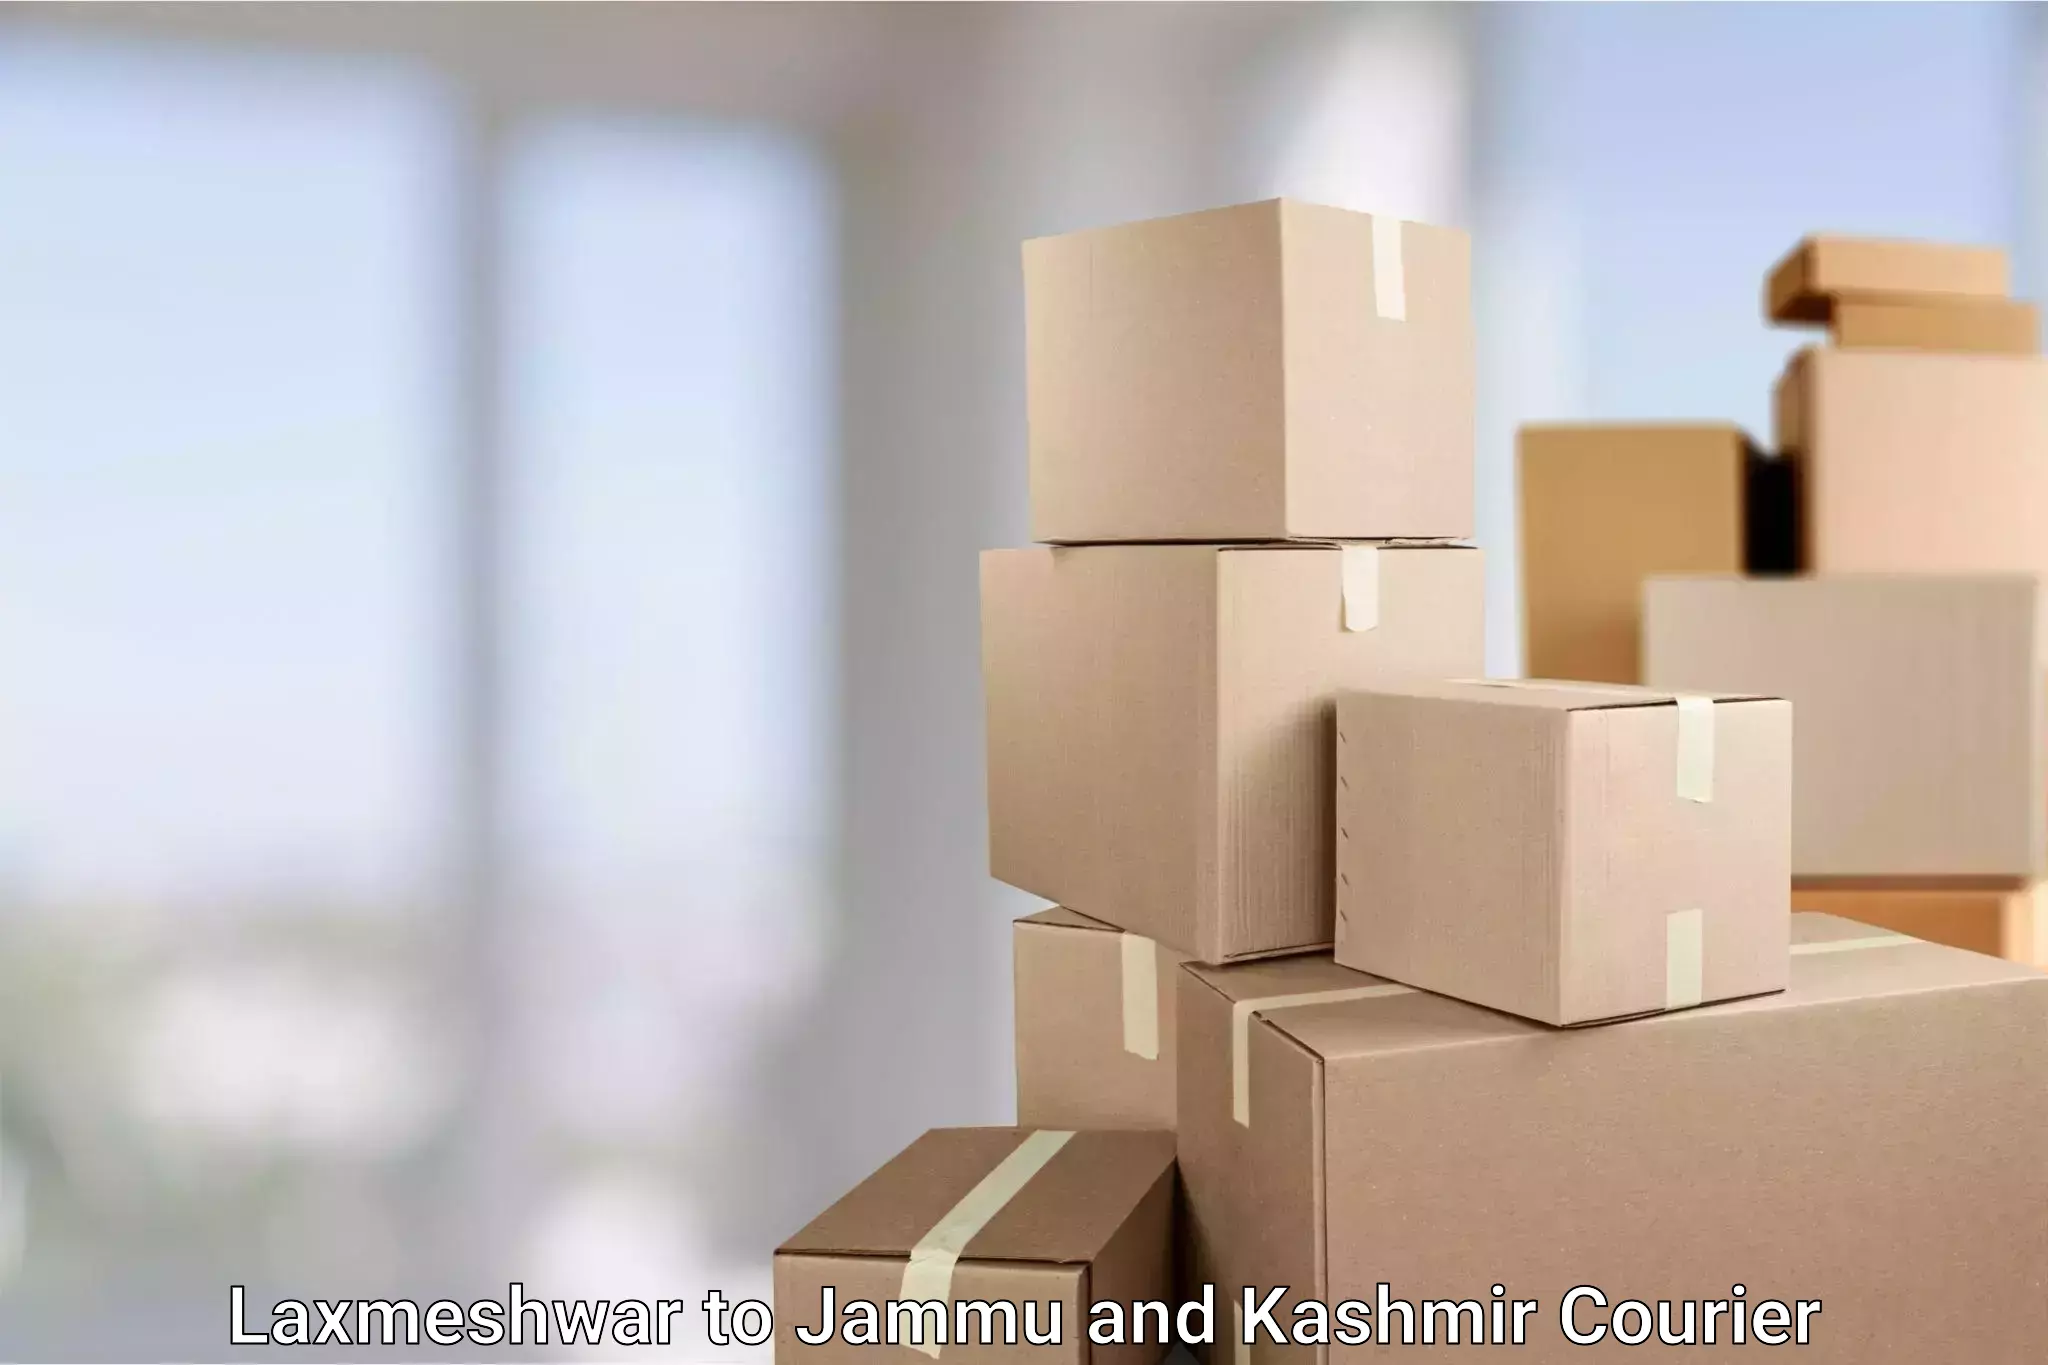 Reliable logistics providers Laxmeshwar to Rajouri